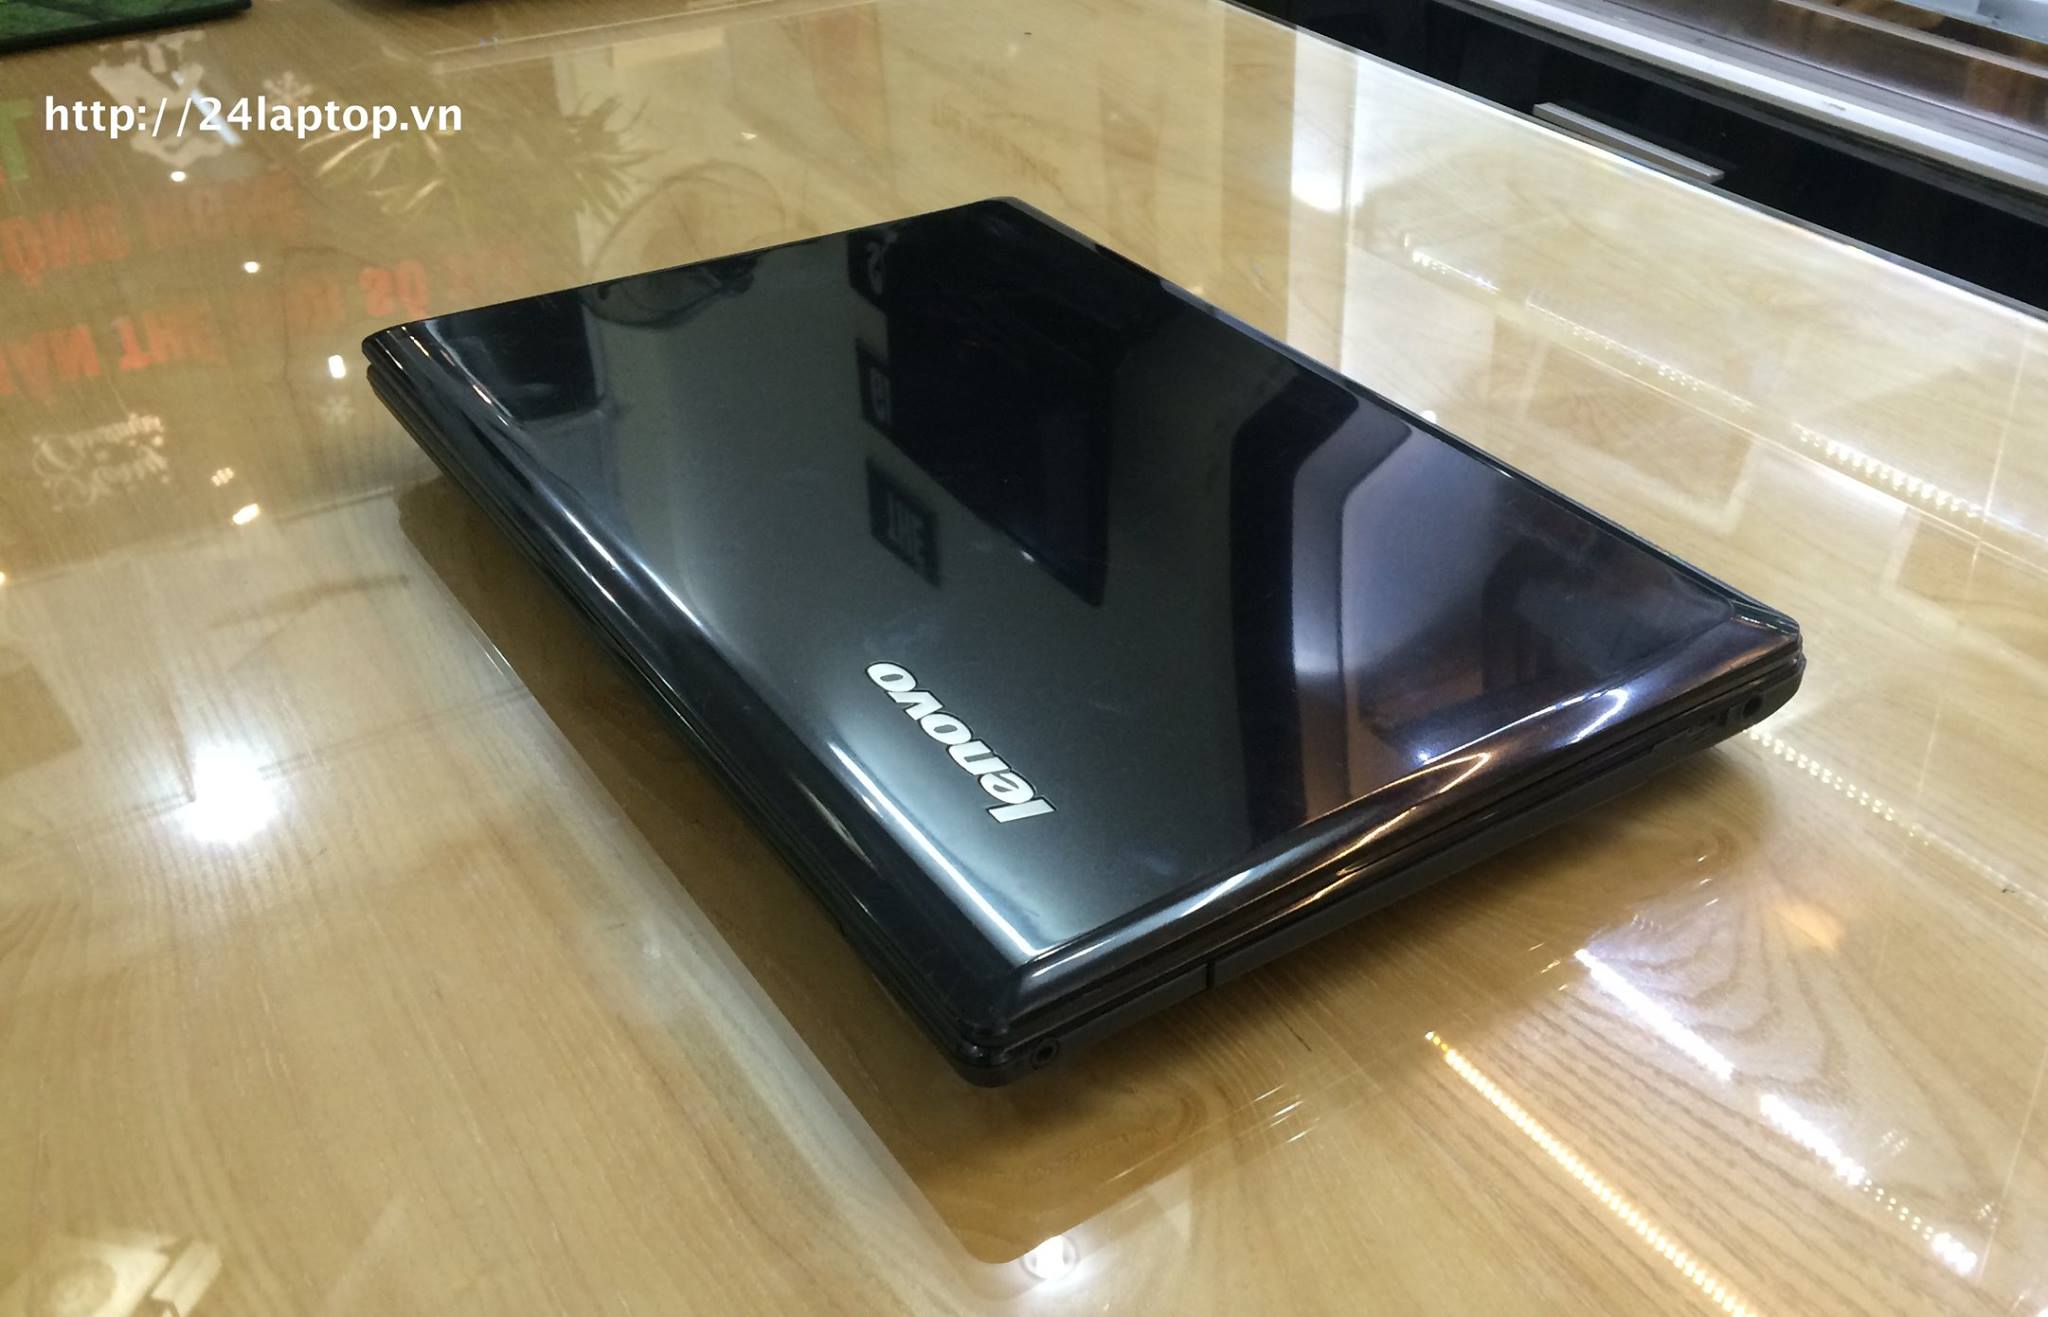 Laptop Lenovo G580.jpg